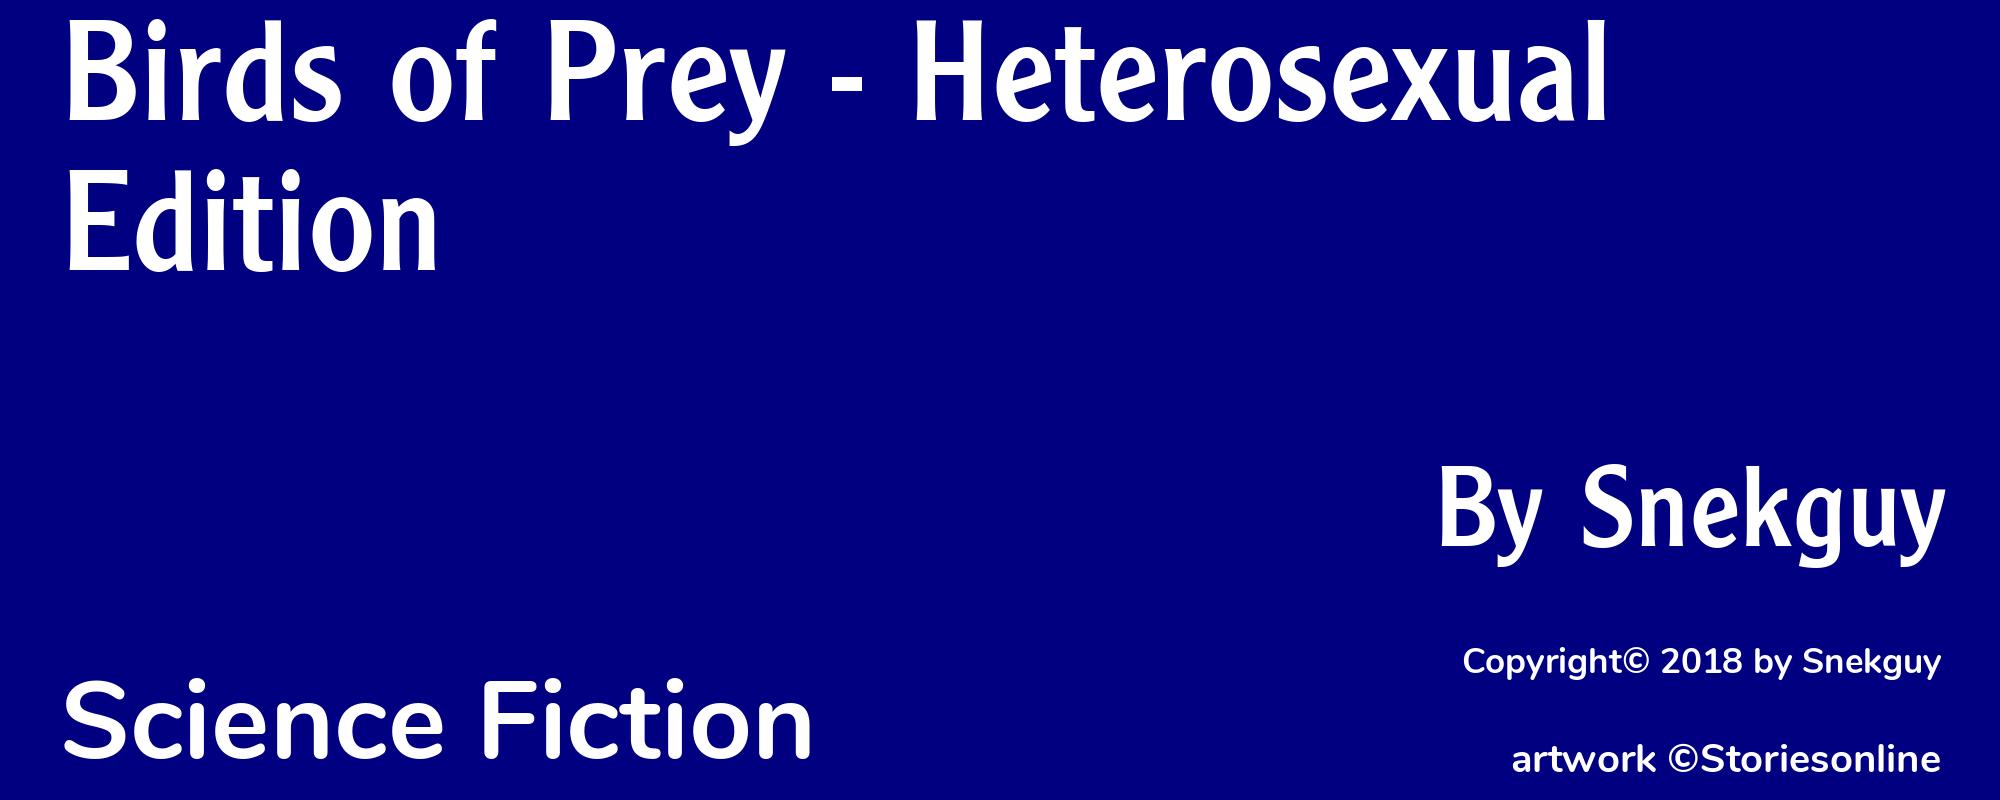 Birds of Prey - Heterosexual Edition - Cover